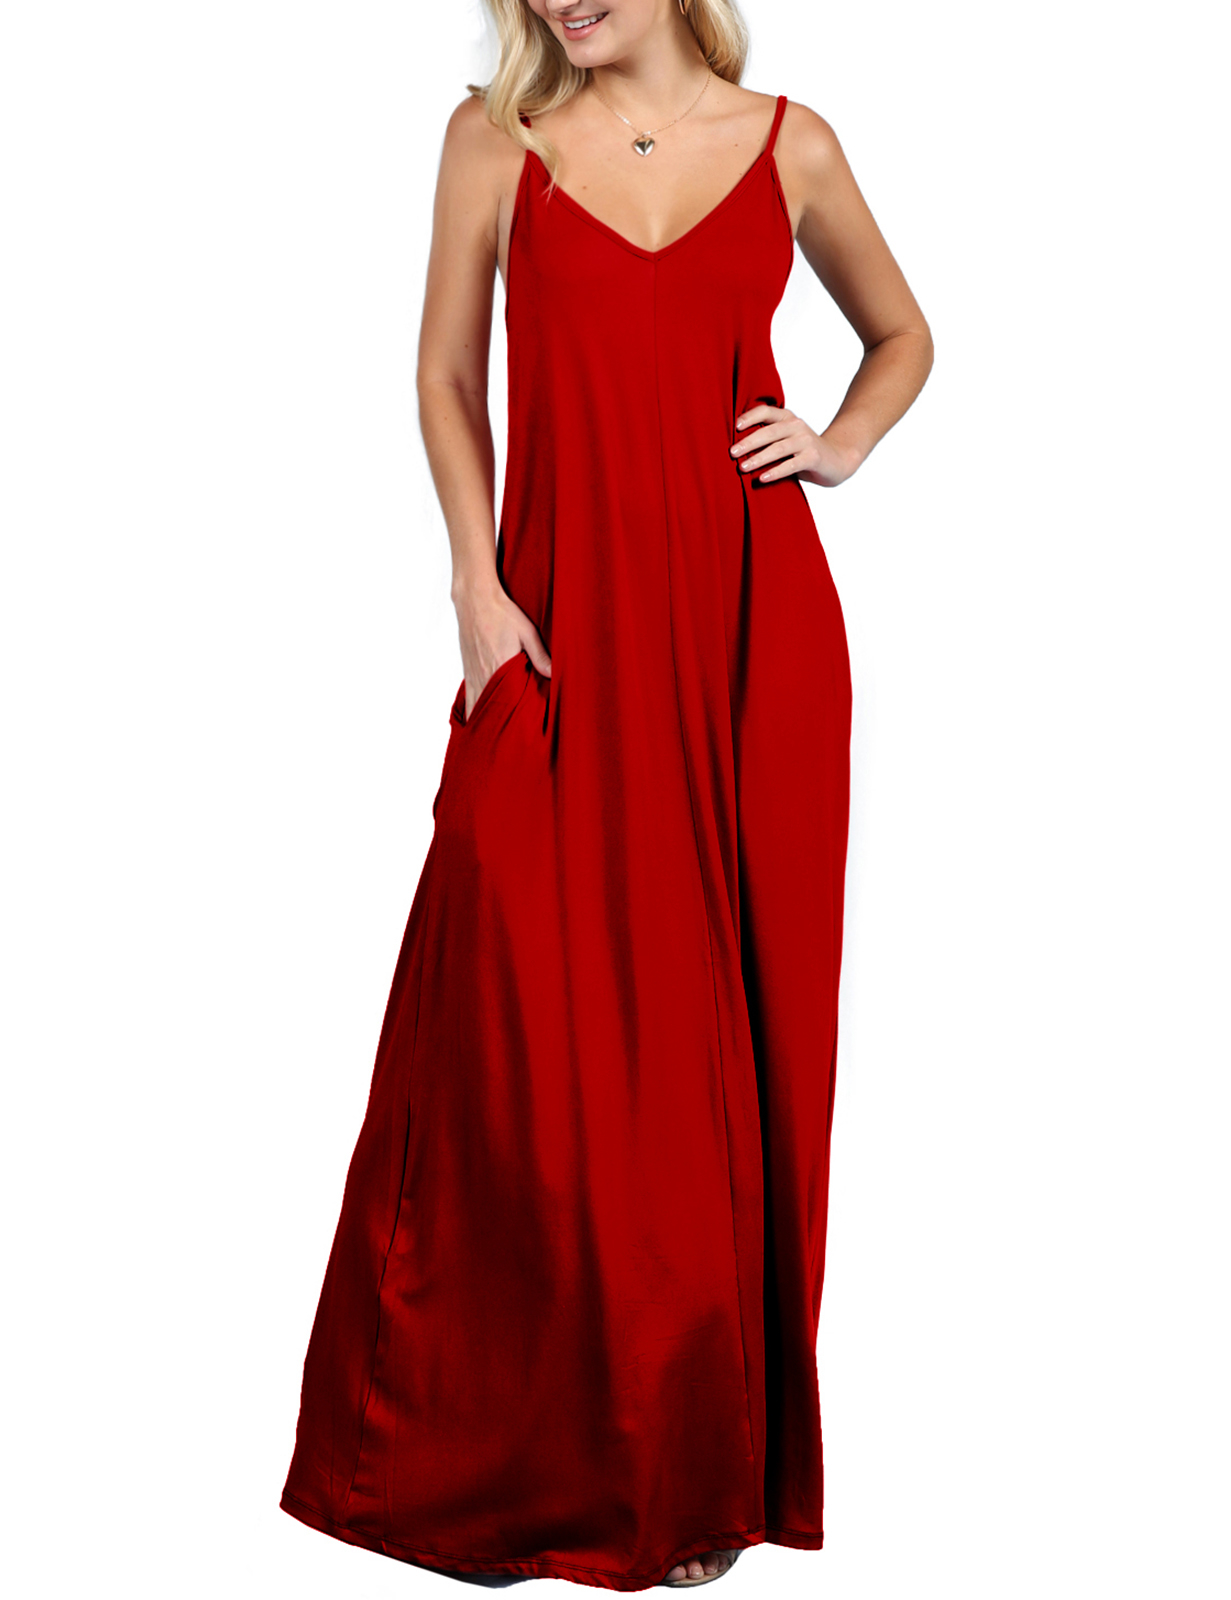 Model wearing red dress.